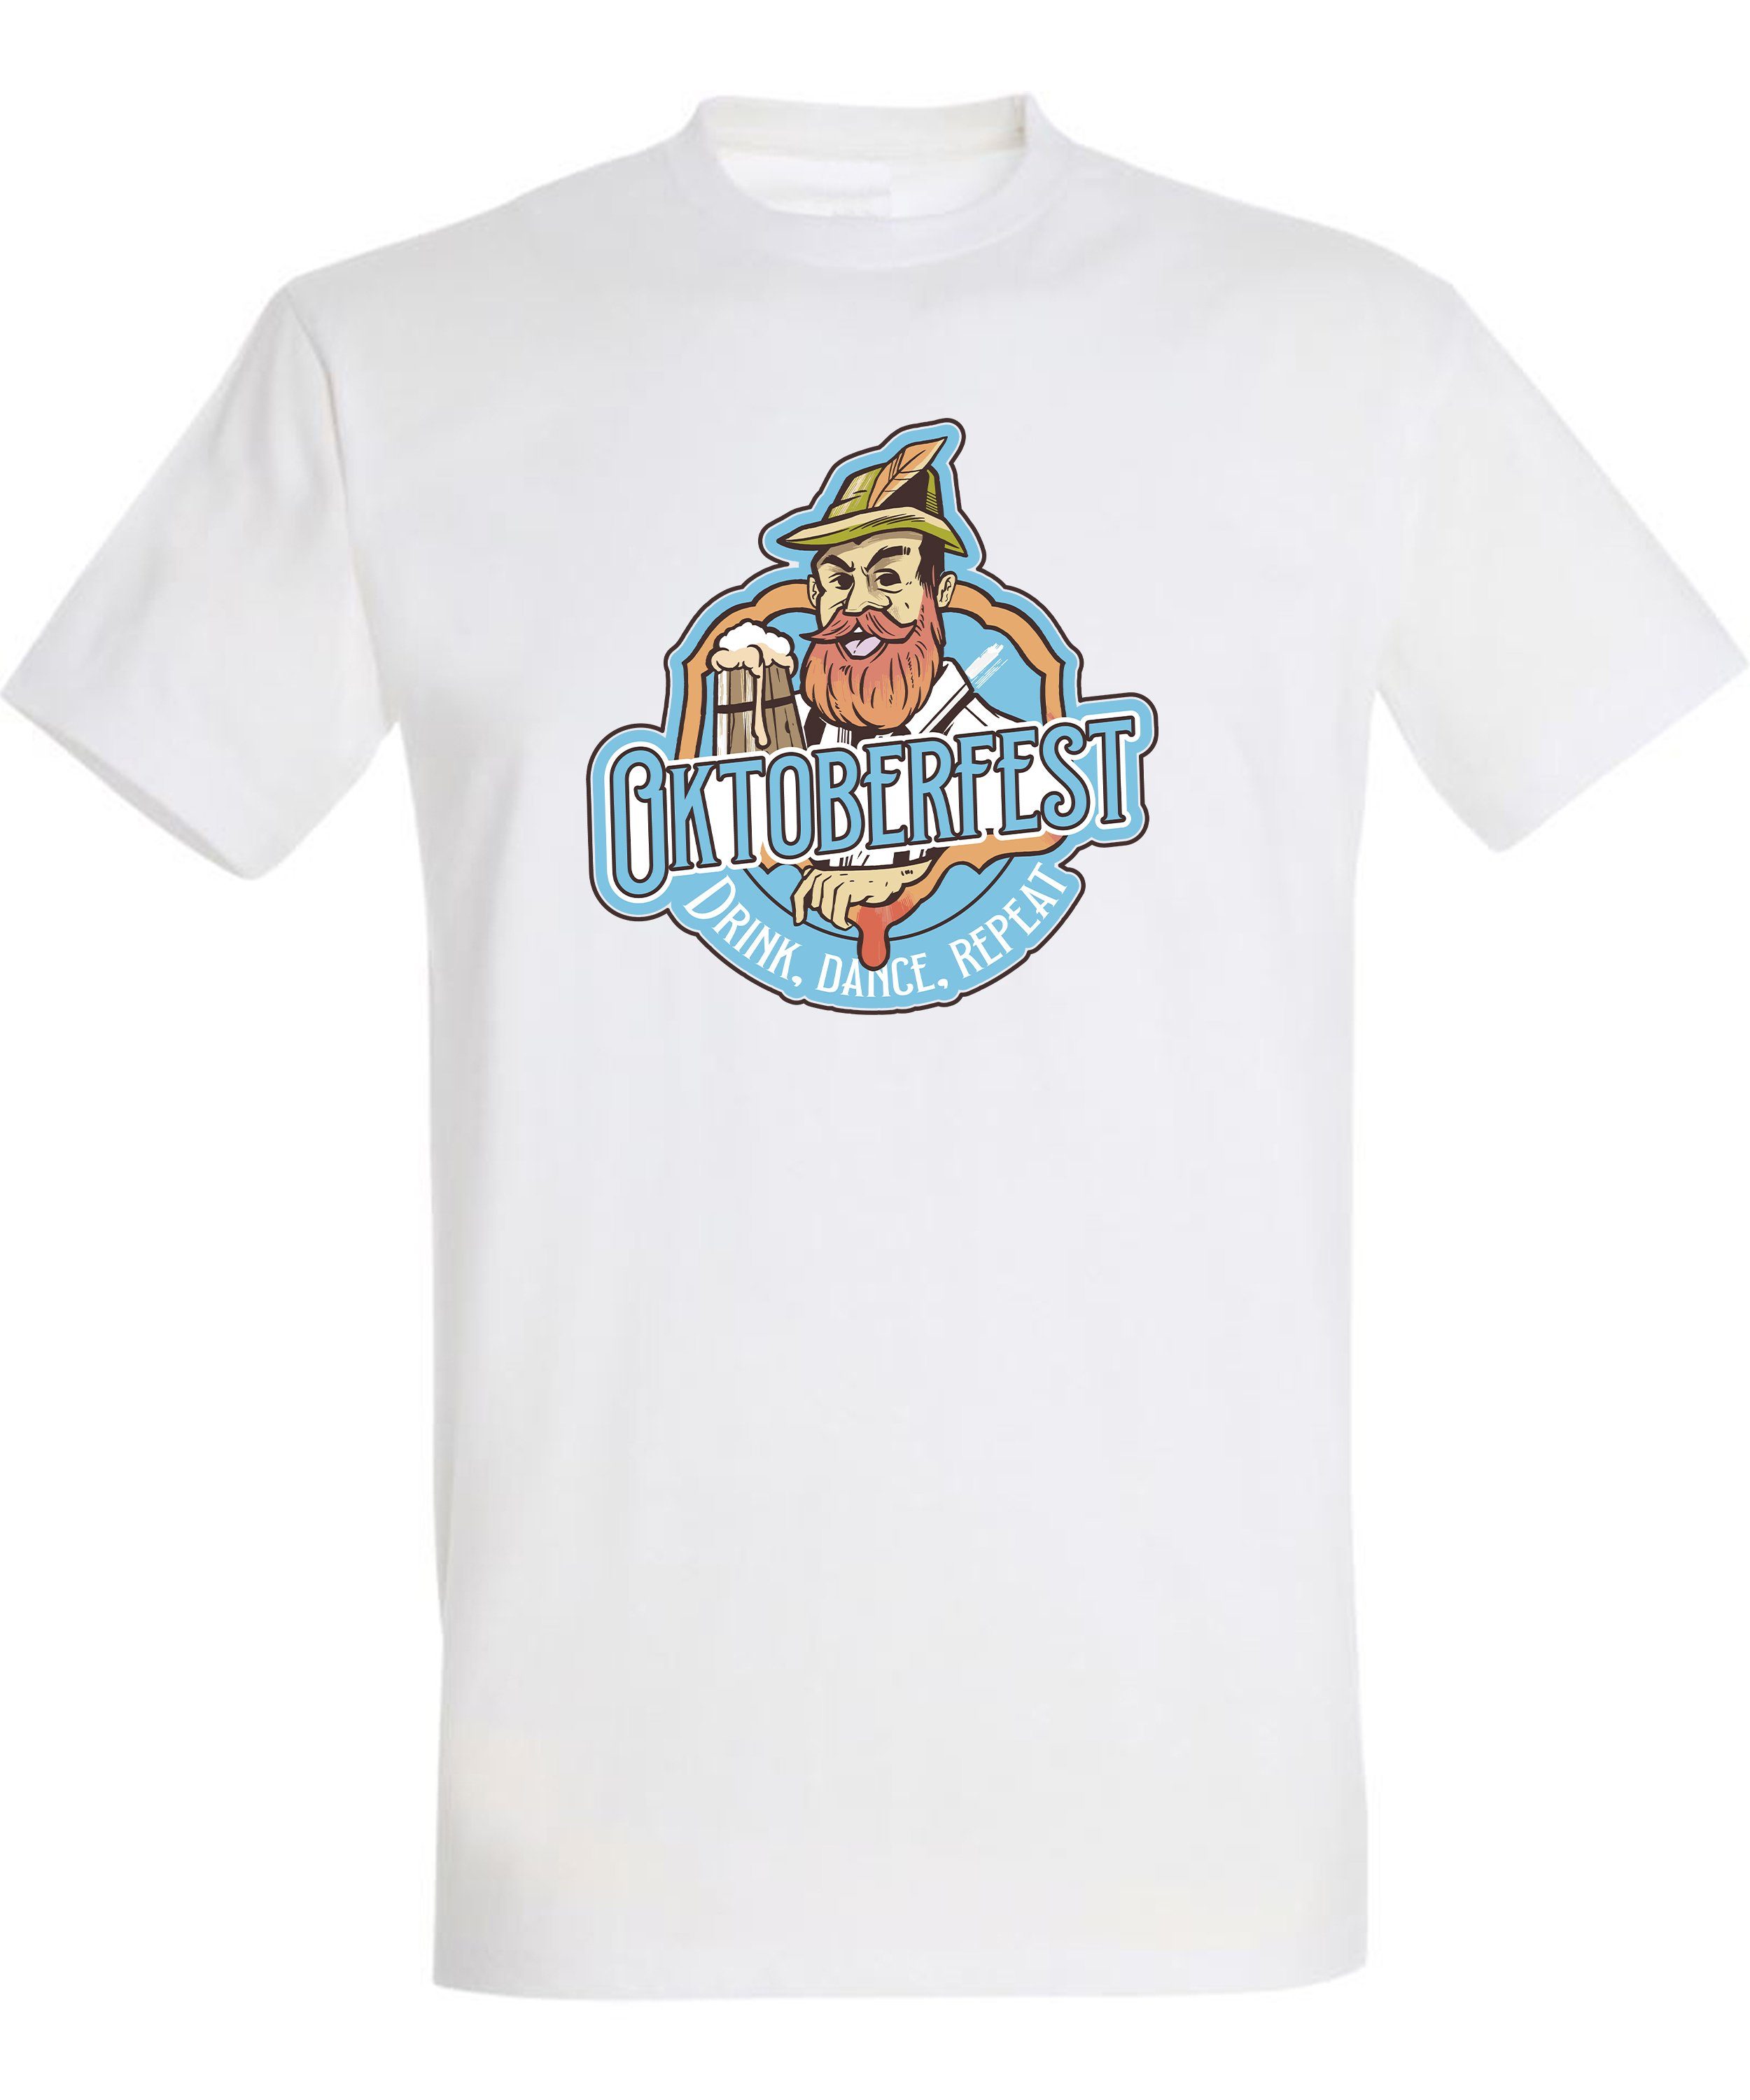 MyDesign24 T-Shirt Herren Fun Shirt Regular i318 mit Aufdruck T-Shirt Baumwollshirt Fit, weiss Oktoberfest - Print Trinkshirt